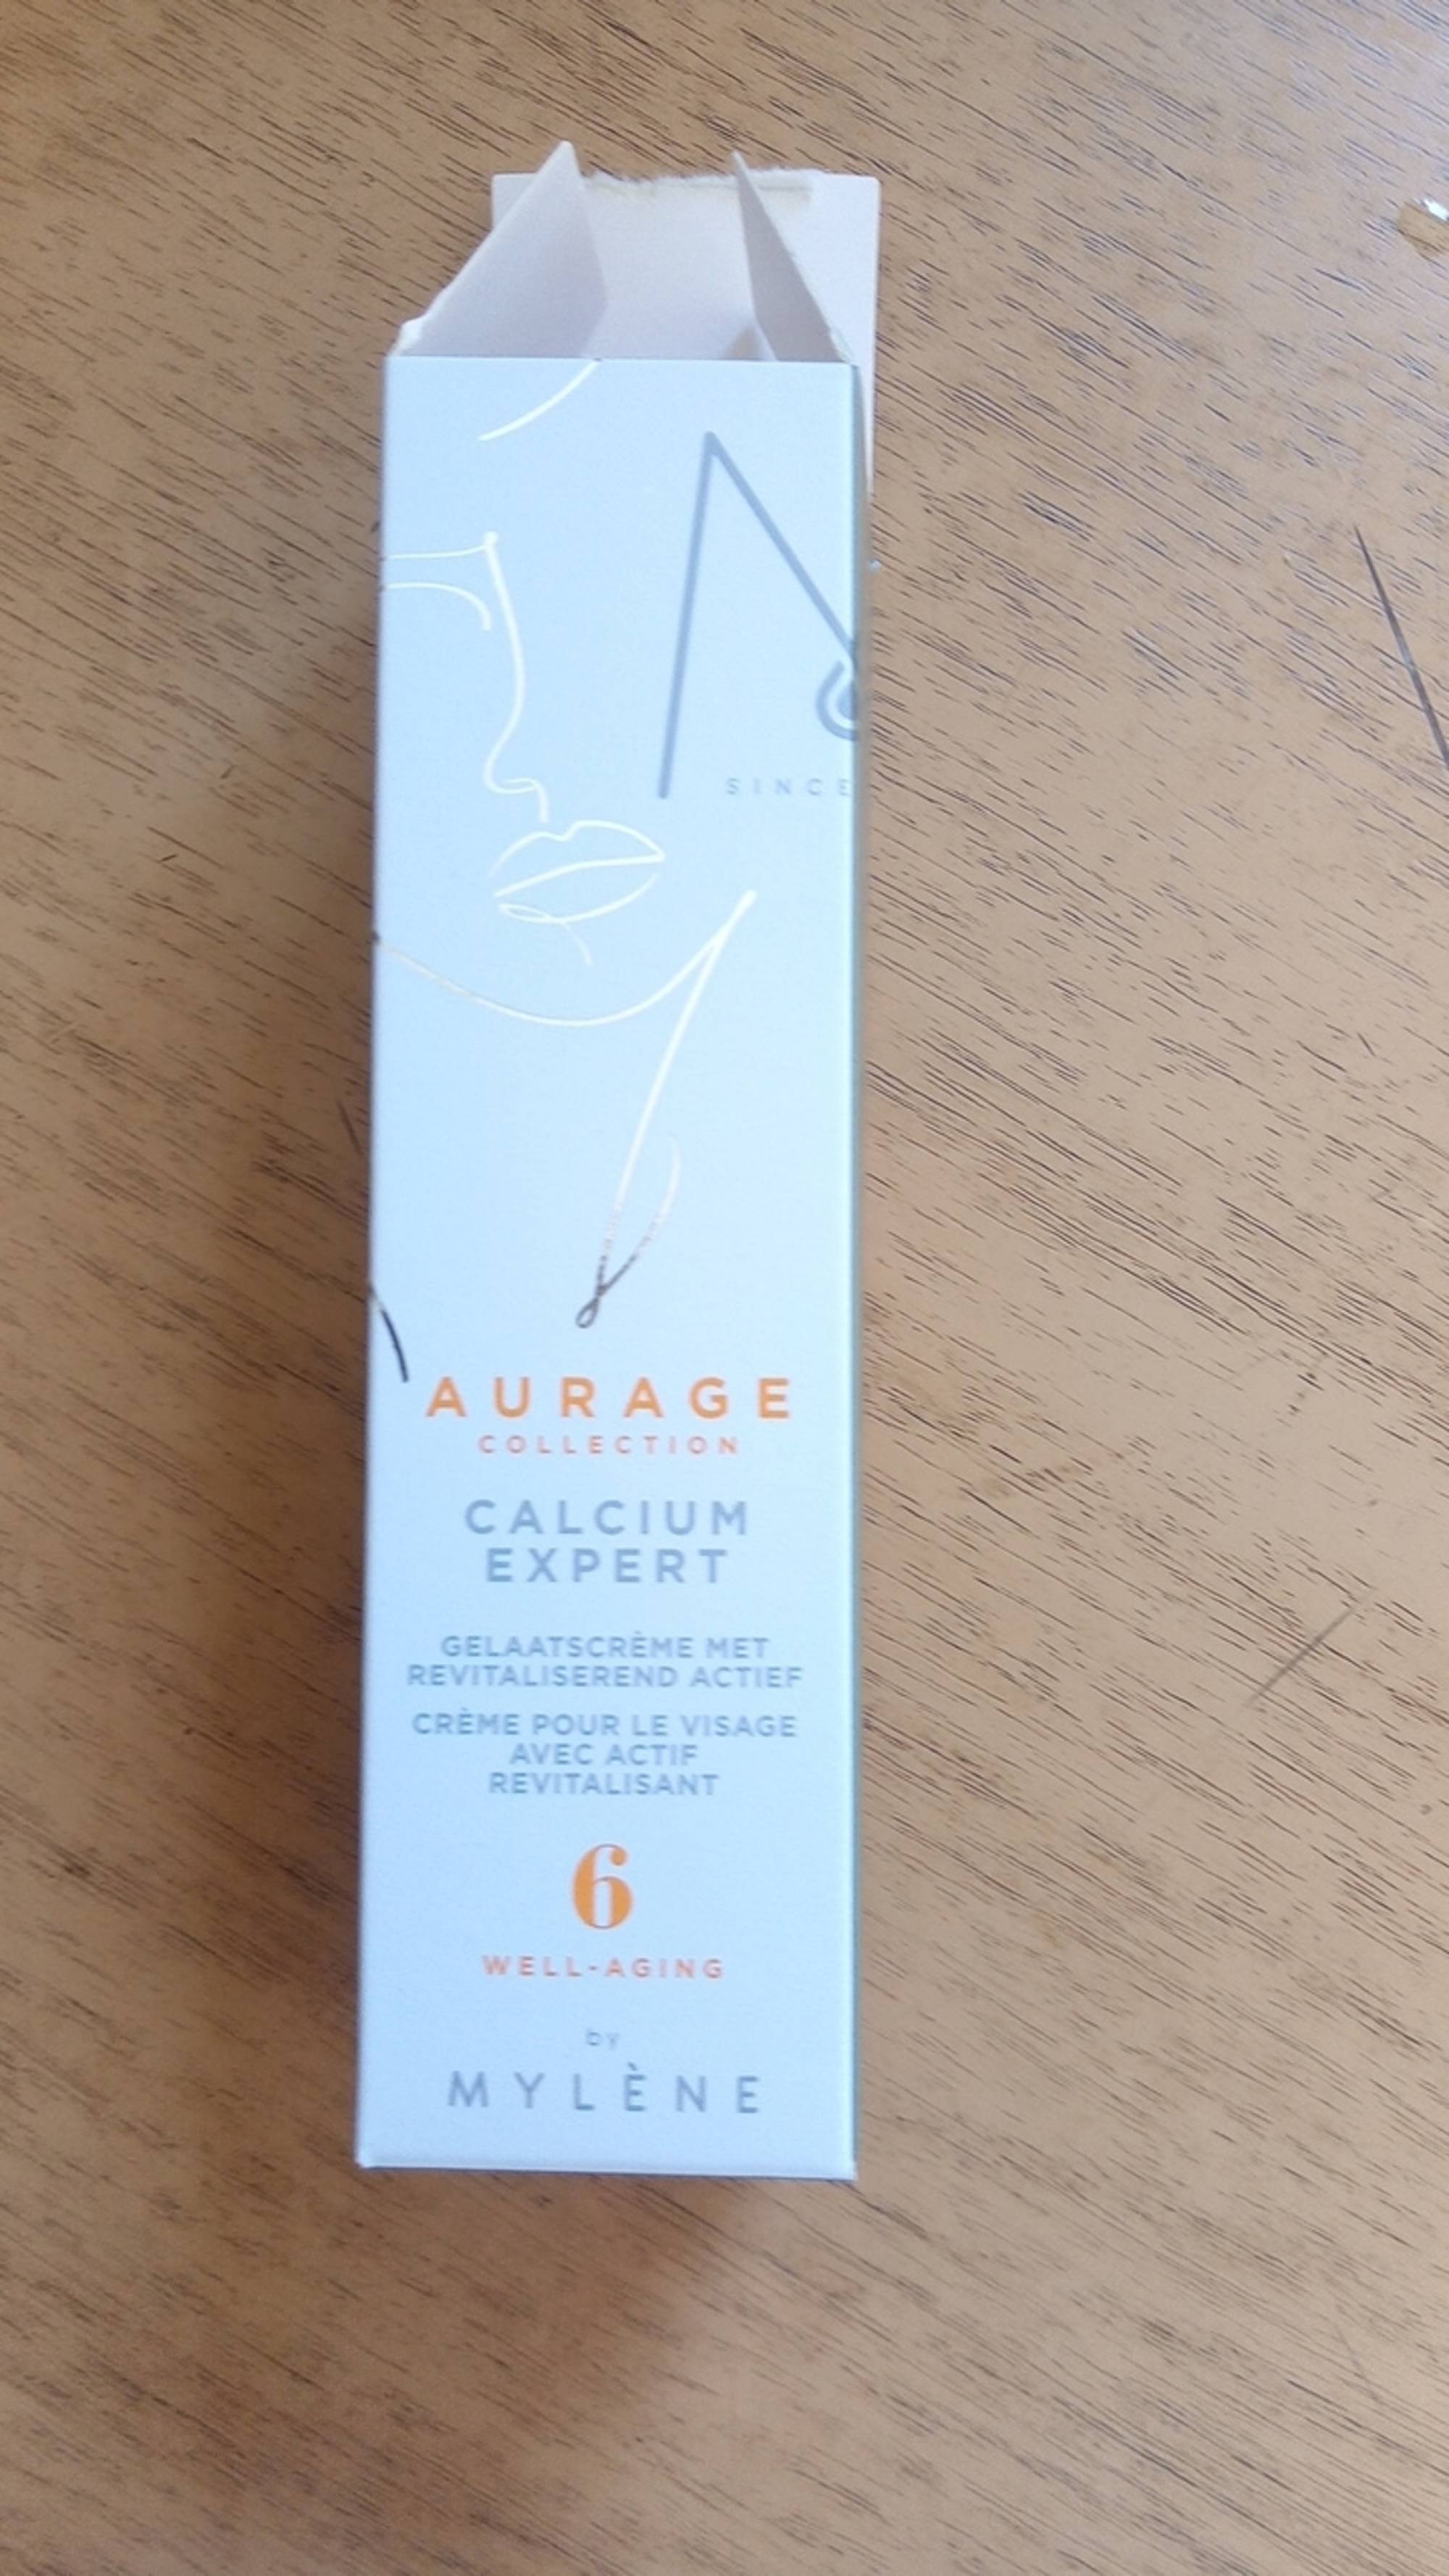 MYLÈNE - Aurage Calcium expert - Crème pour le visage avec actif revitalisant